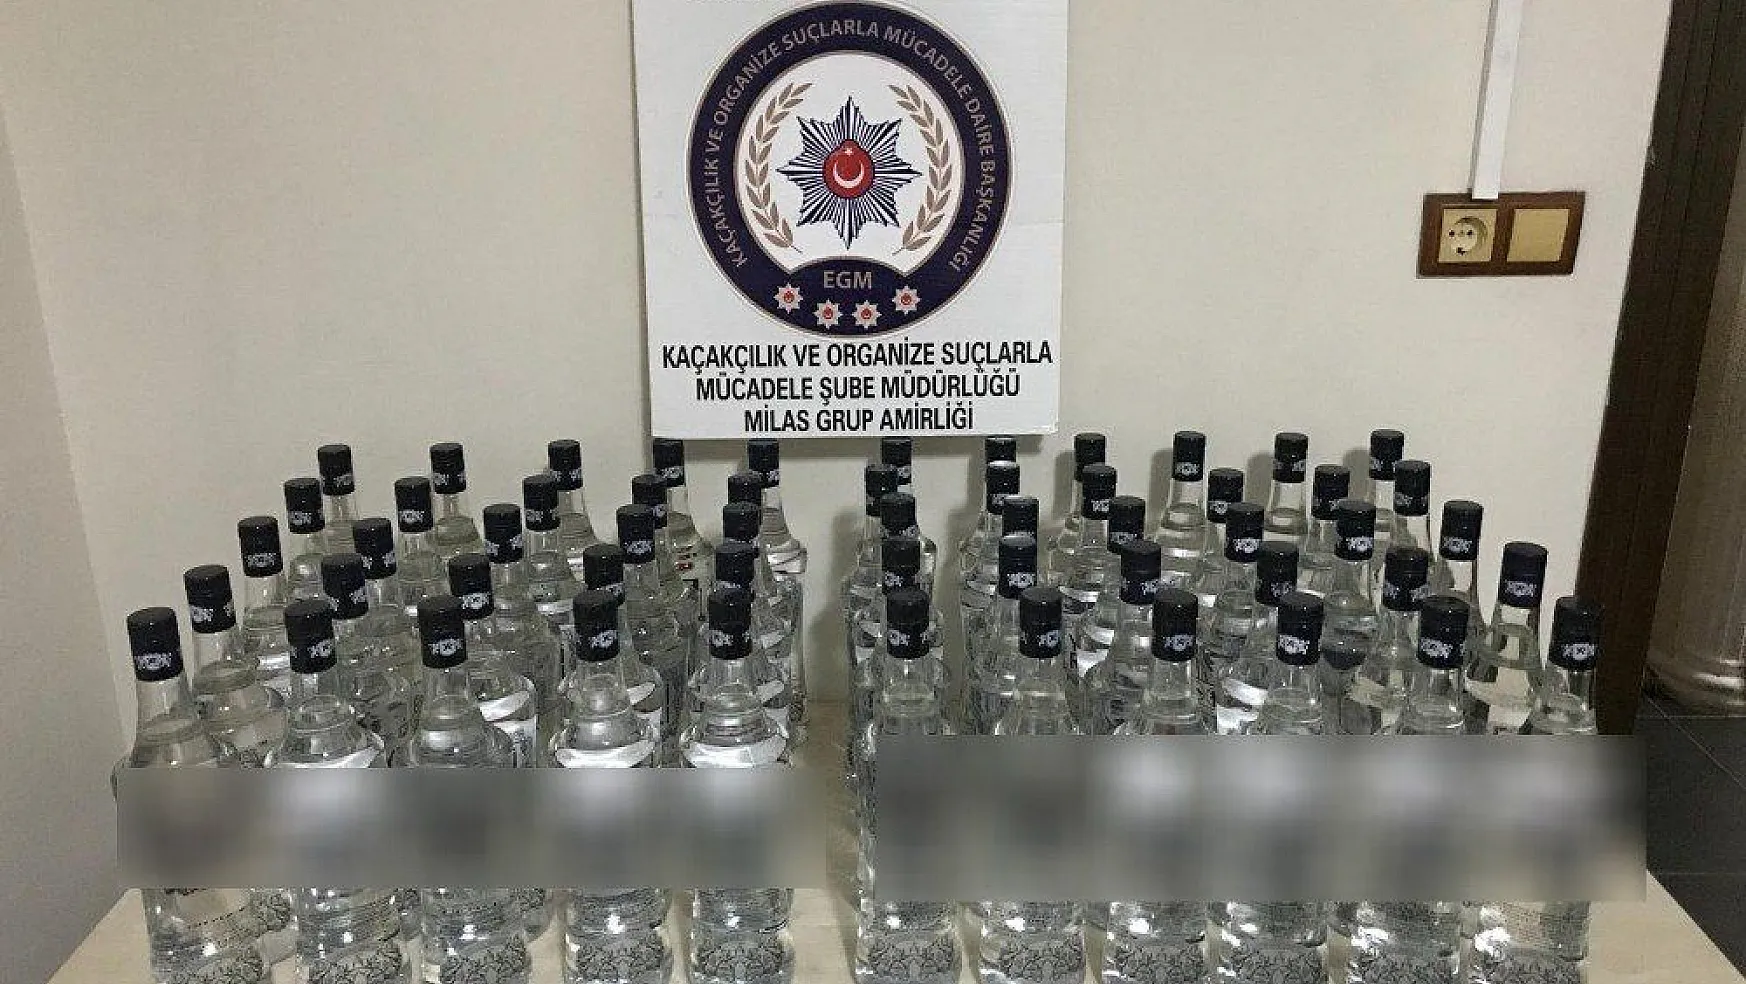 Milas'ta 51 şişe kaçak içki ele geçirildi